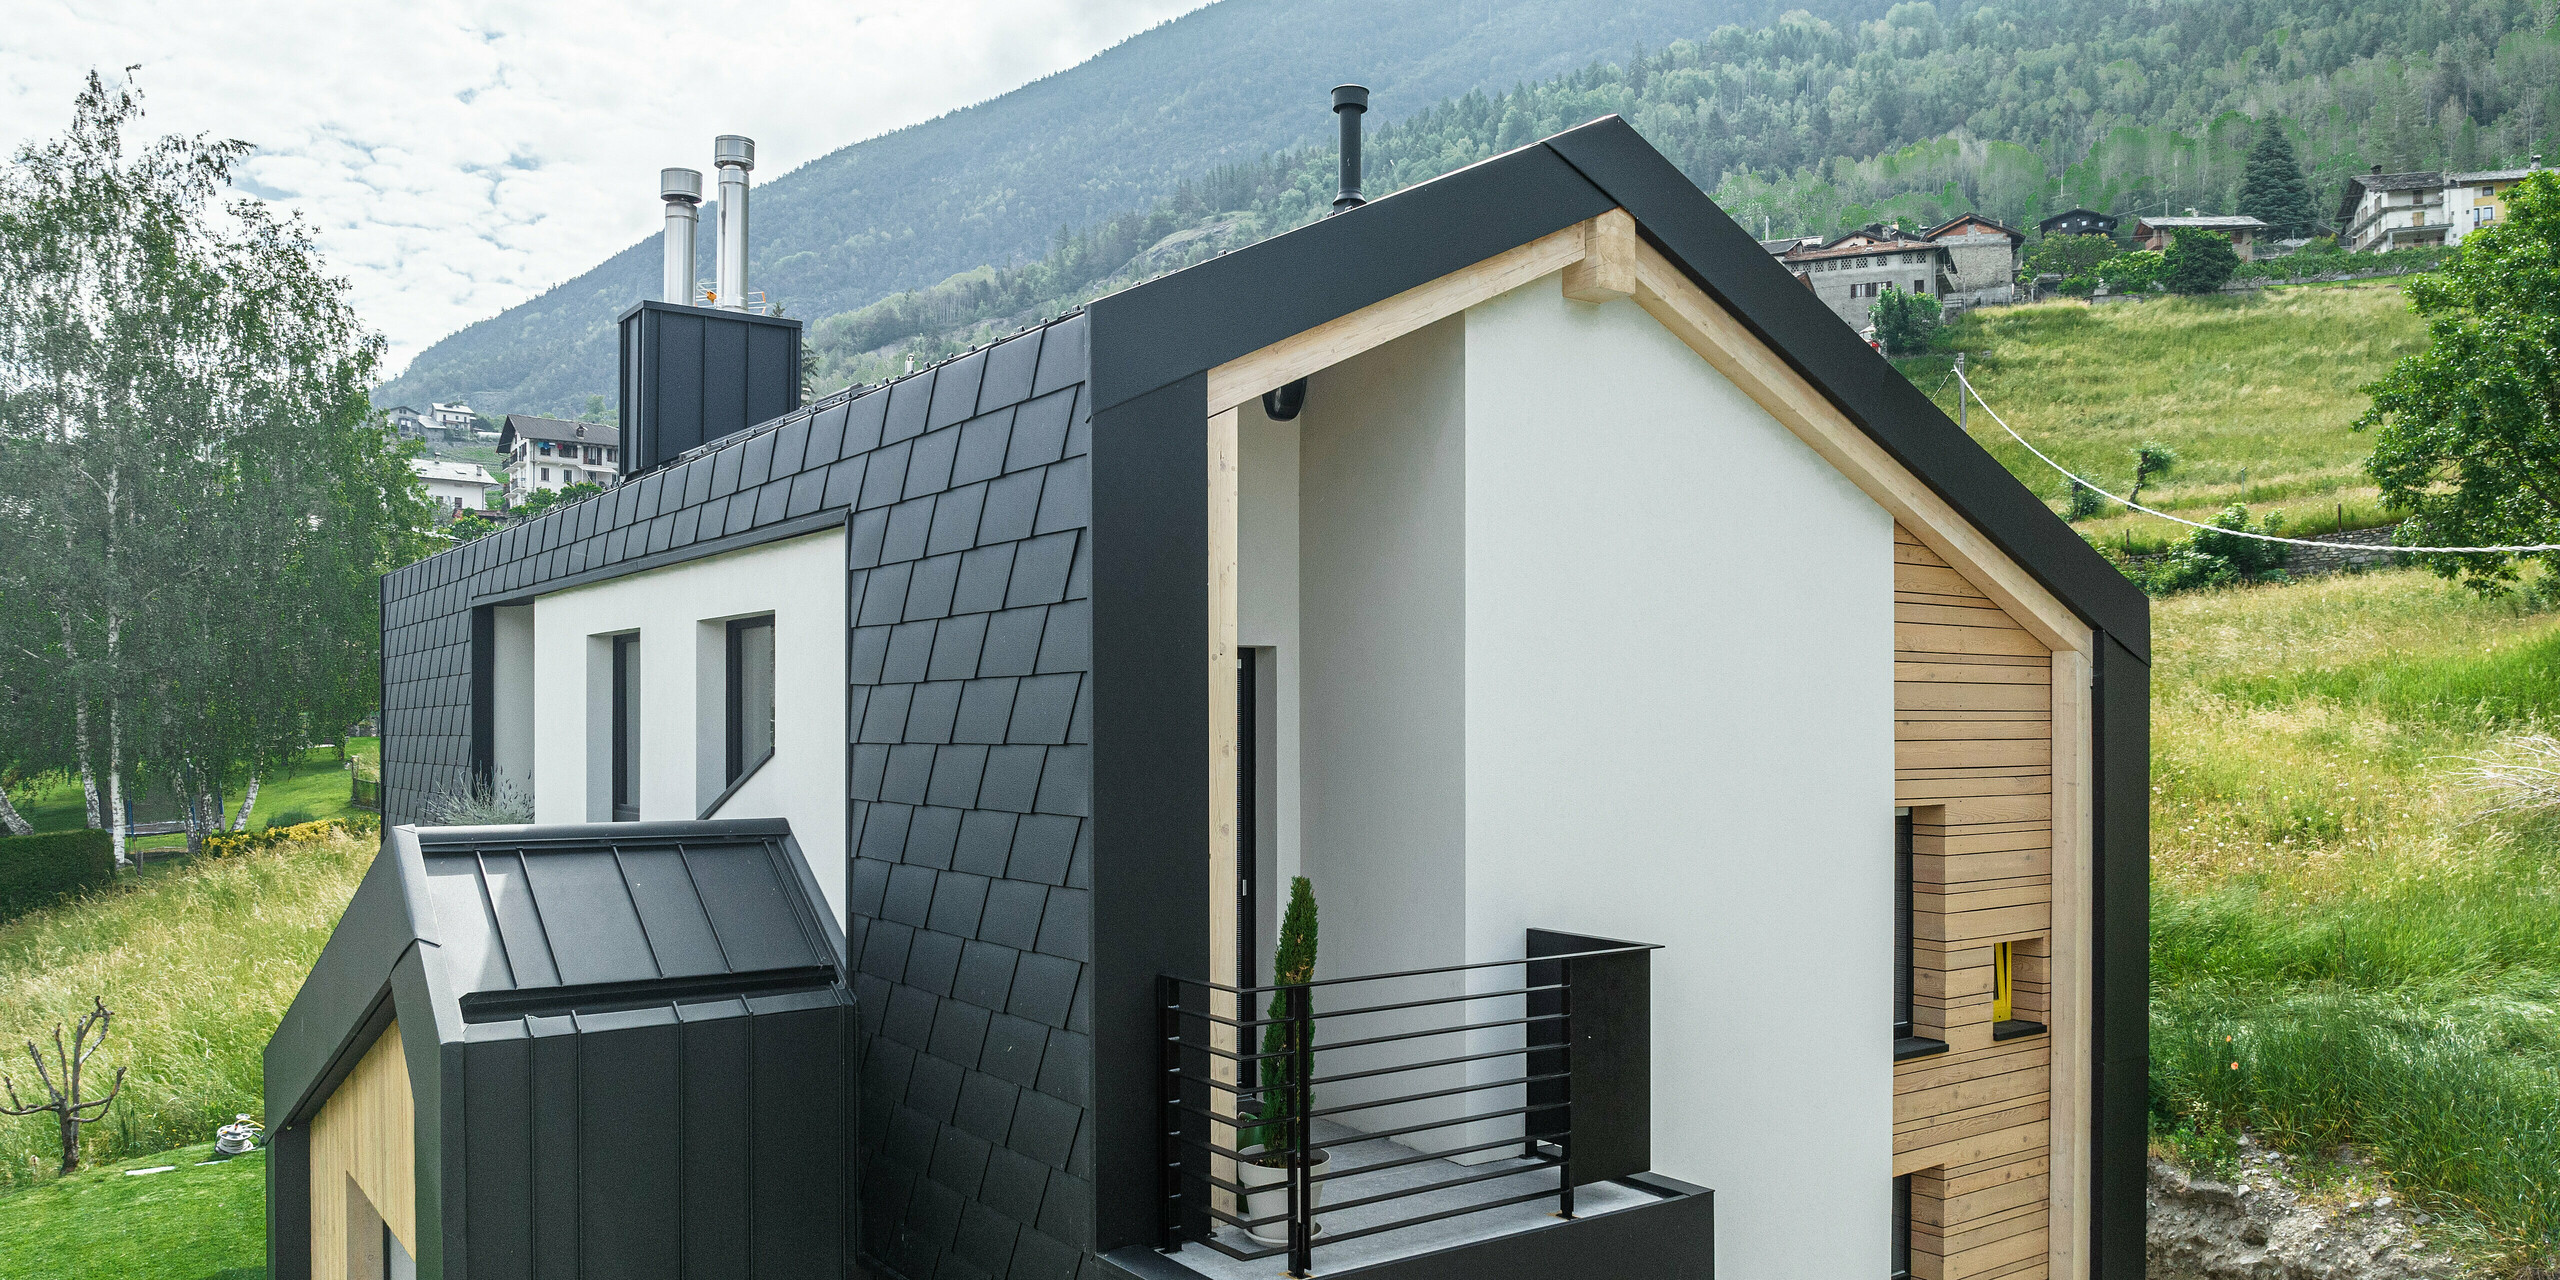 Moderne Architektur trifft auf Funktionalität bei diesem Einfamilienhaus, das von PREFA Dachschindeln DS.19 und Wandschindeln in Schwarz umhüllt ist. Der Blickwinkel betont die saubere Linienführung und die Kombination aus dunklen Schindeln und natürlichen Holzelementen, während das Haus harmonisch in die bergige Landschaft integriert ist.